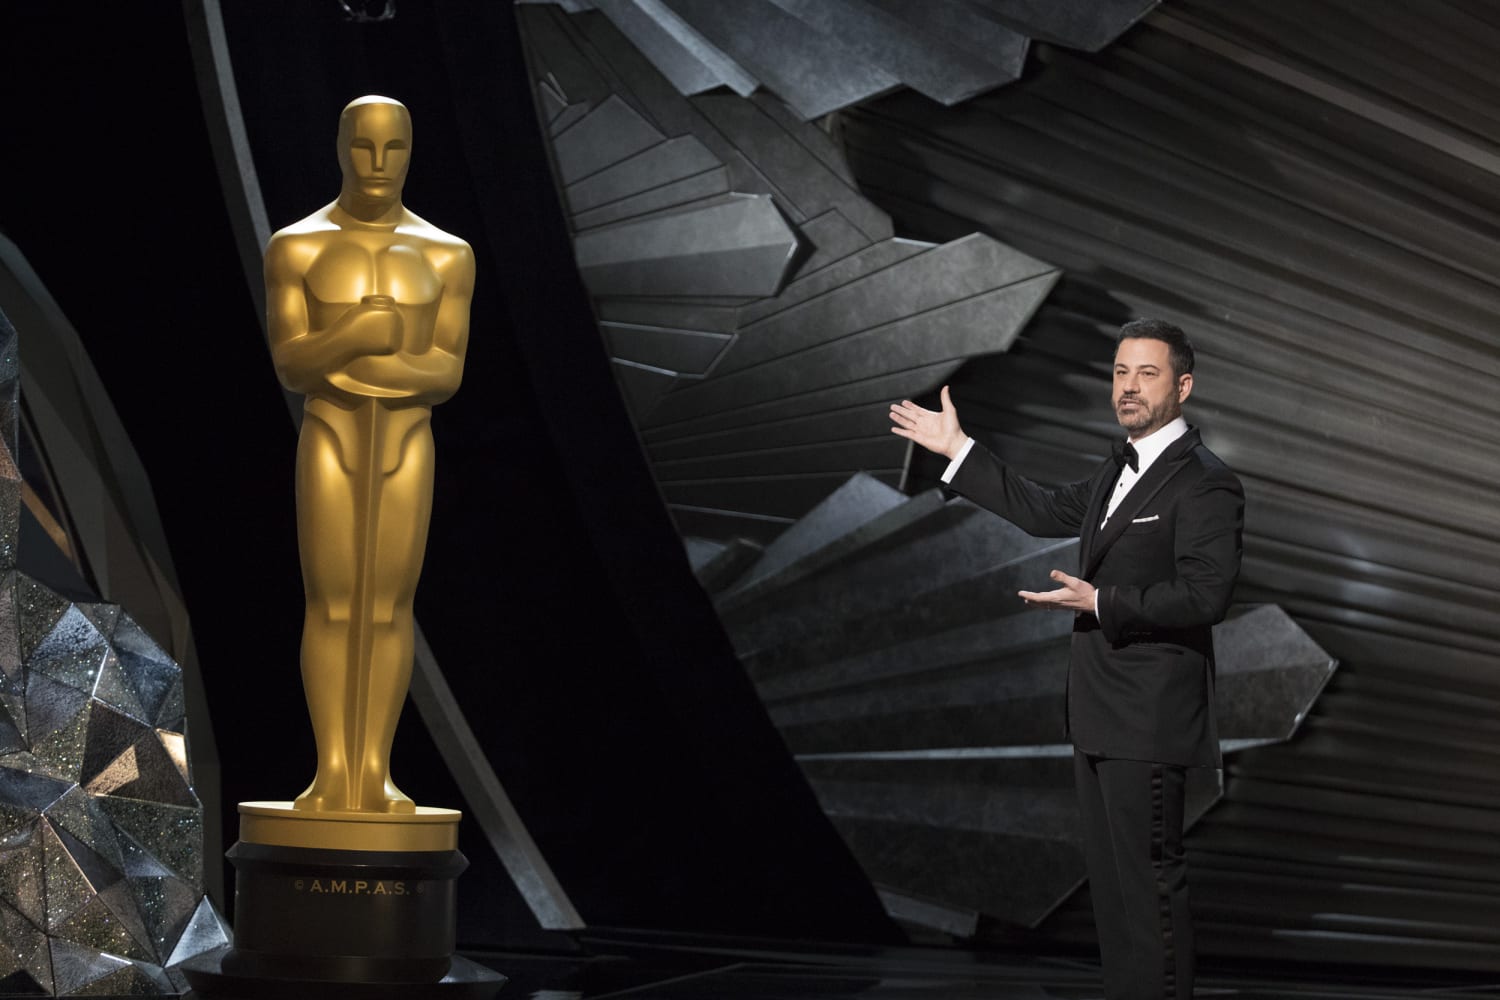 Oscars 2023: Jimmy Kimmel to return as host for 95th Academy Awards